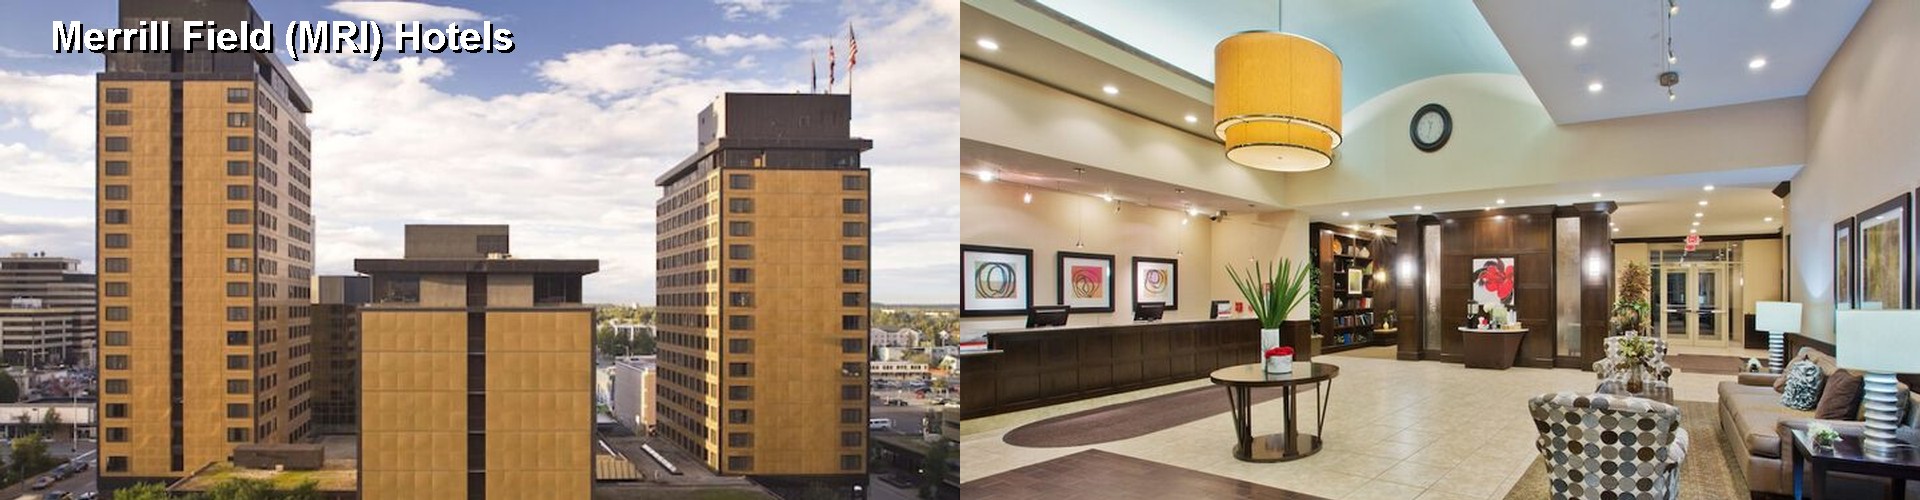 3 Best Hotels near Merrill Field (MRI)